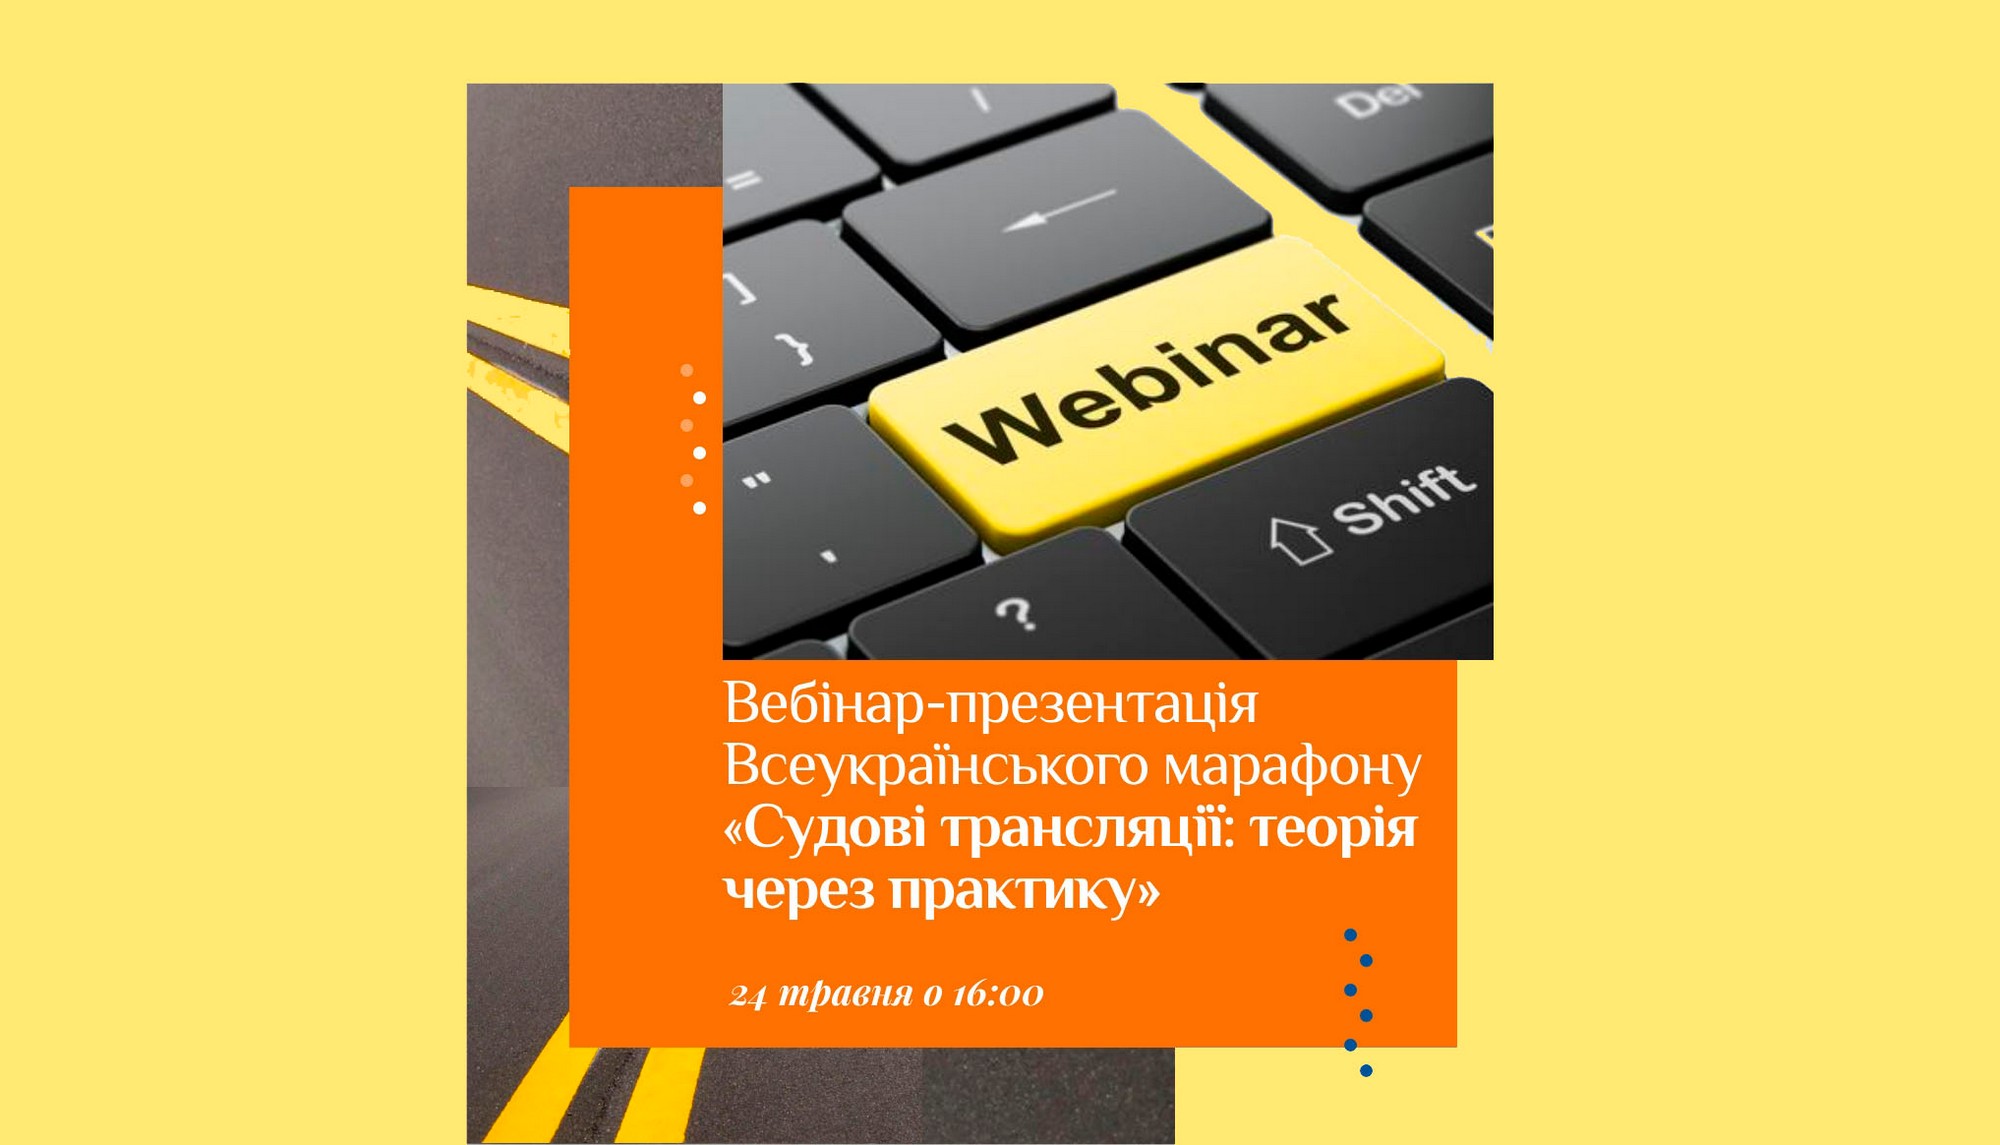 Запрошуємо на вебінар-презентацію Всеукраїнського марафону «Судові трансляції: теорія через практику»